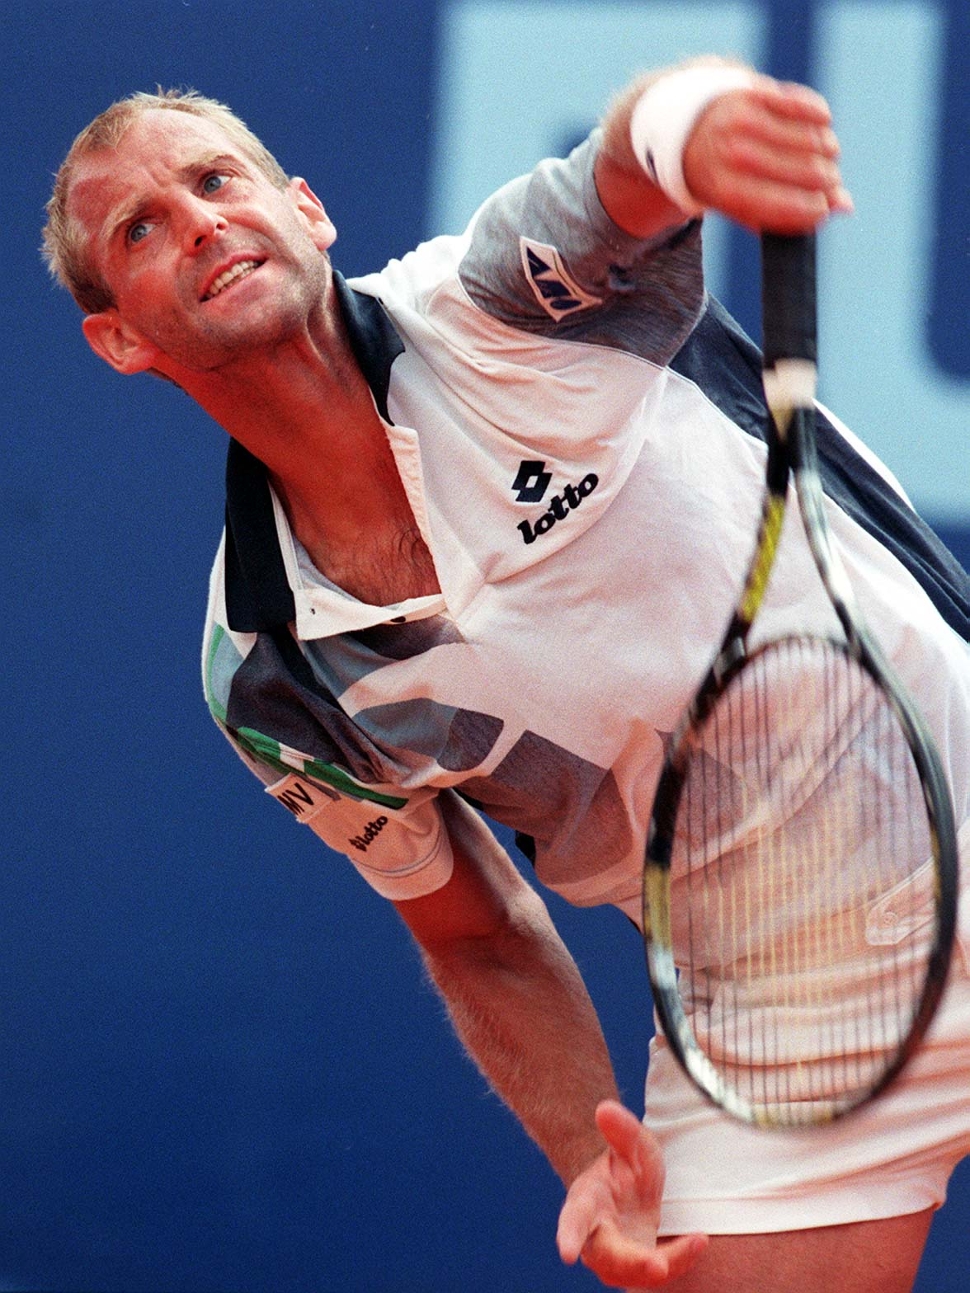 1999 bestreitet Muster sein letztes Match bei einem Major. In Roland Garros verliert er in Runde 1 gegen Nicolas Lapentti in vier Sätzen.